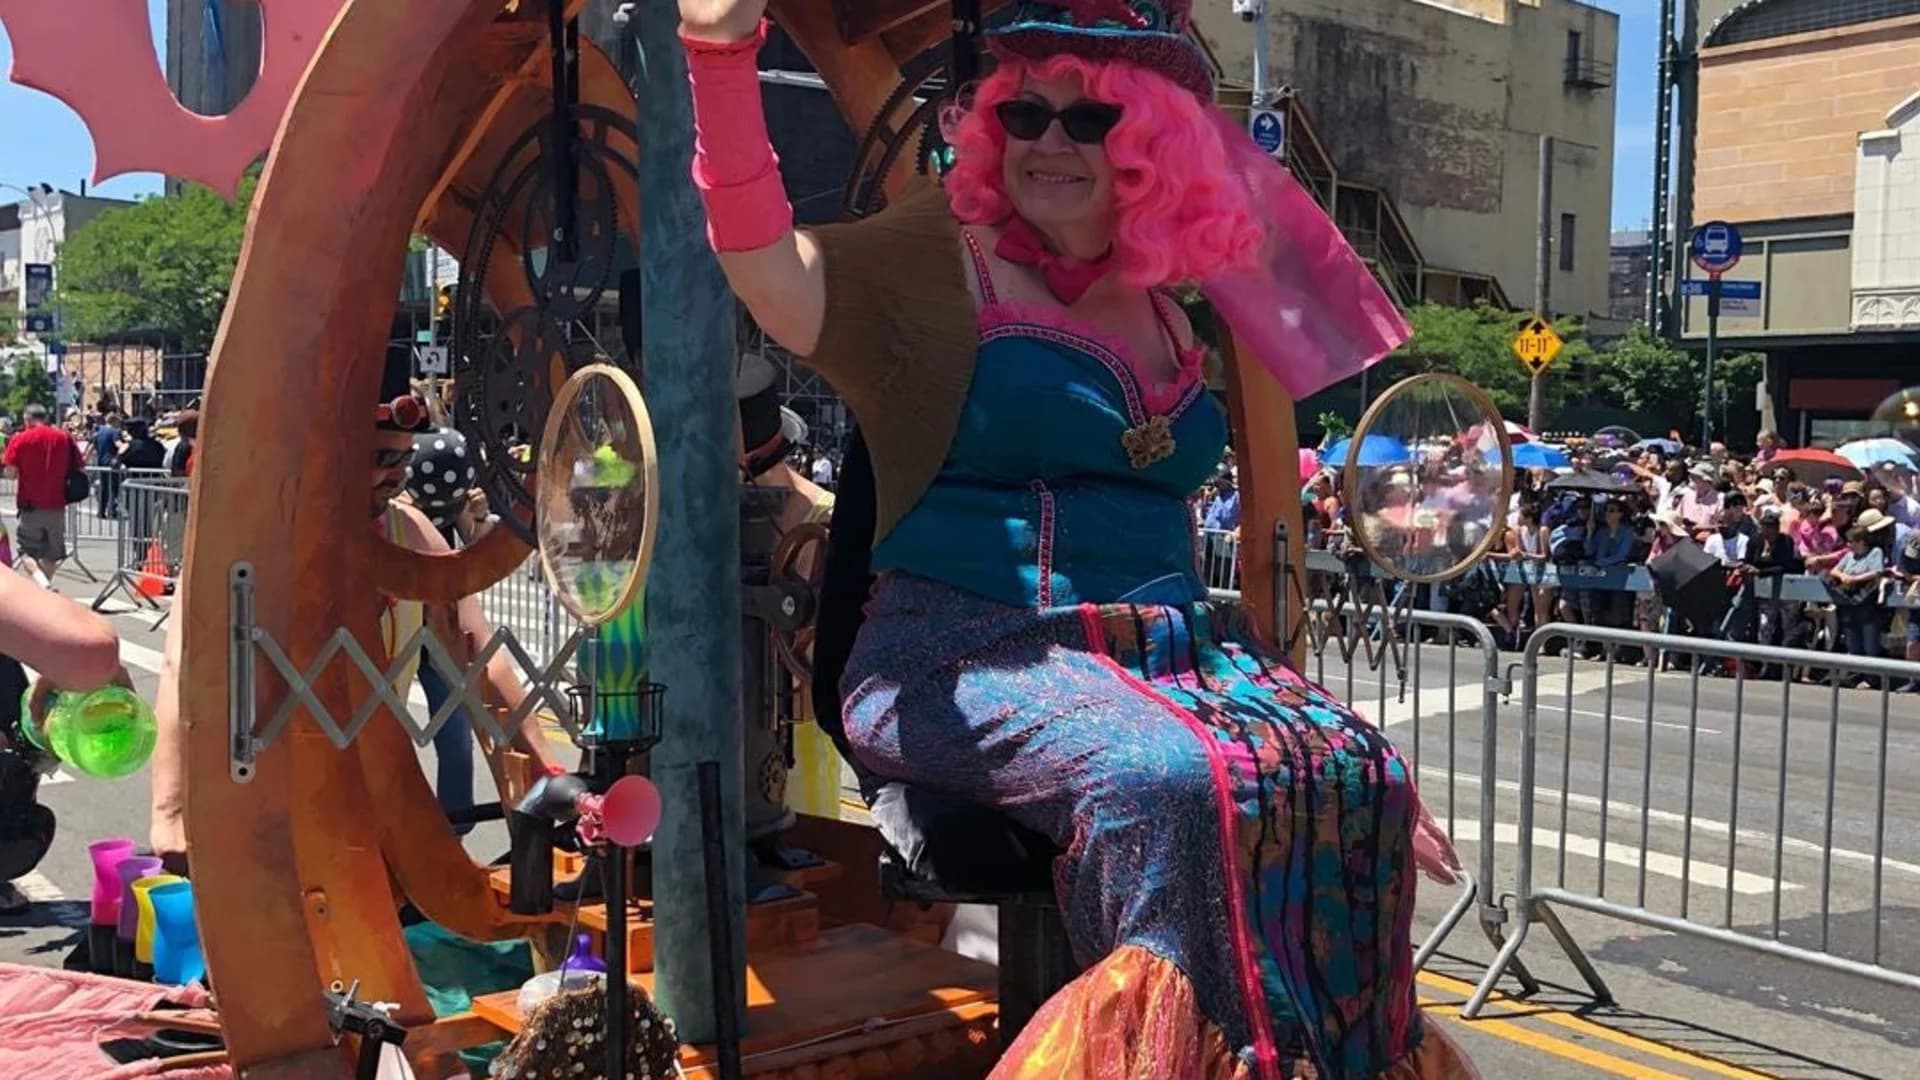 PHOTOS: Mermaid Parade in Coney Island